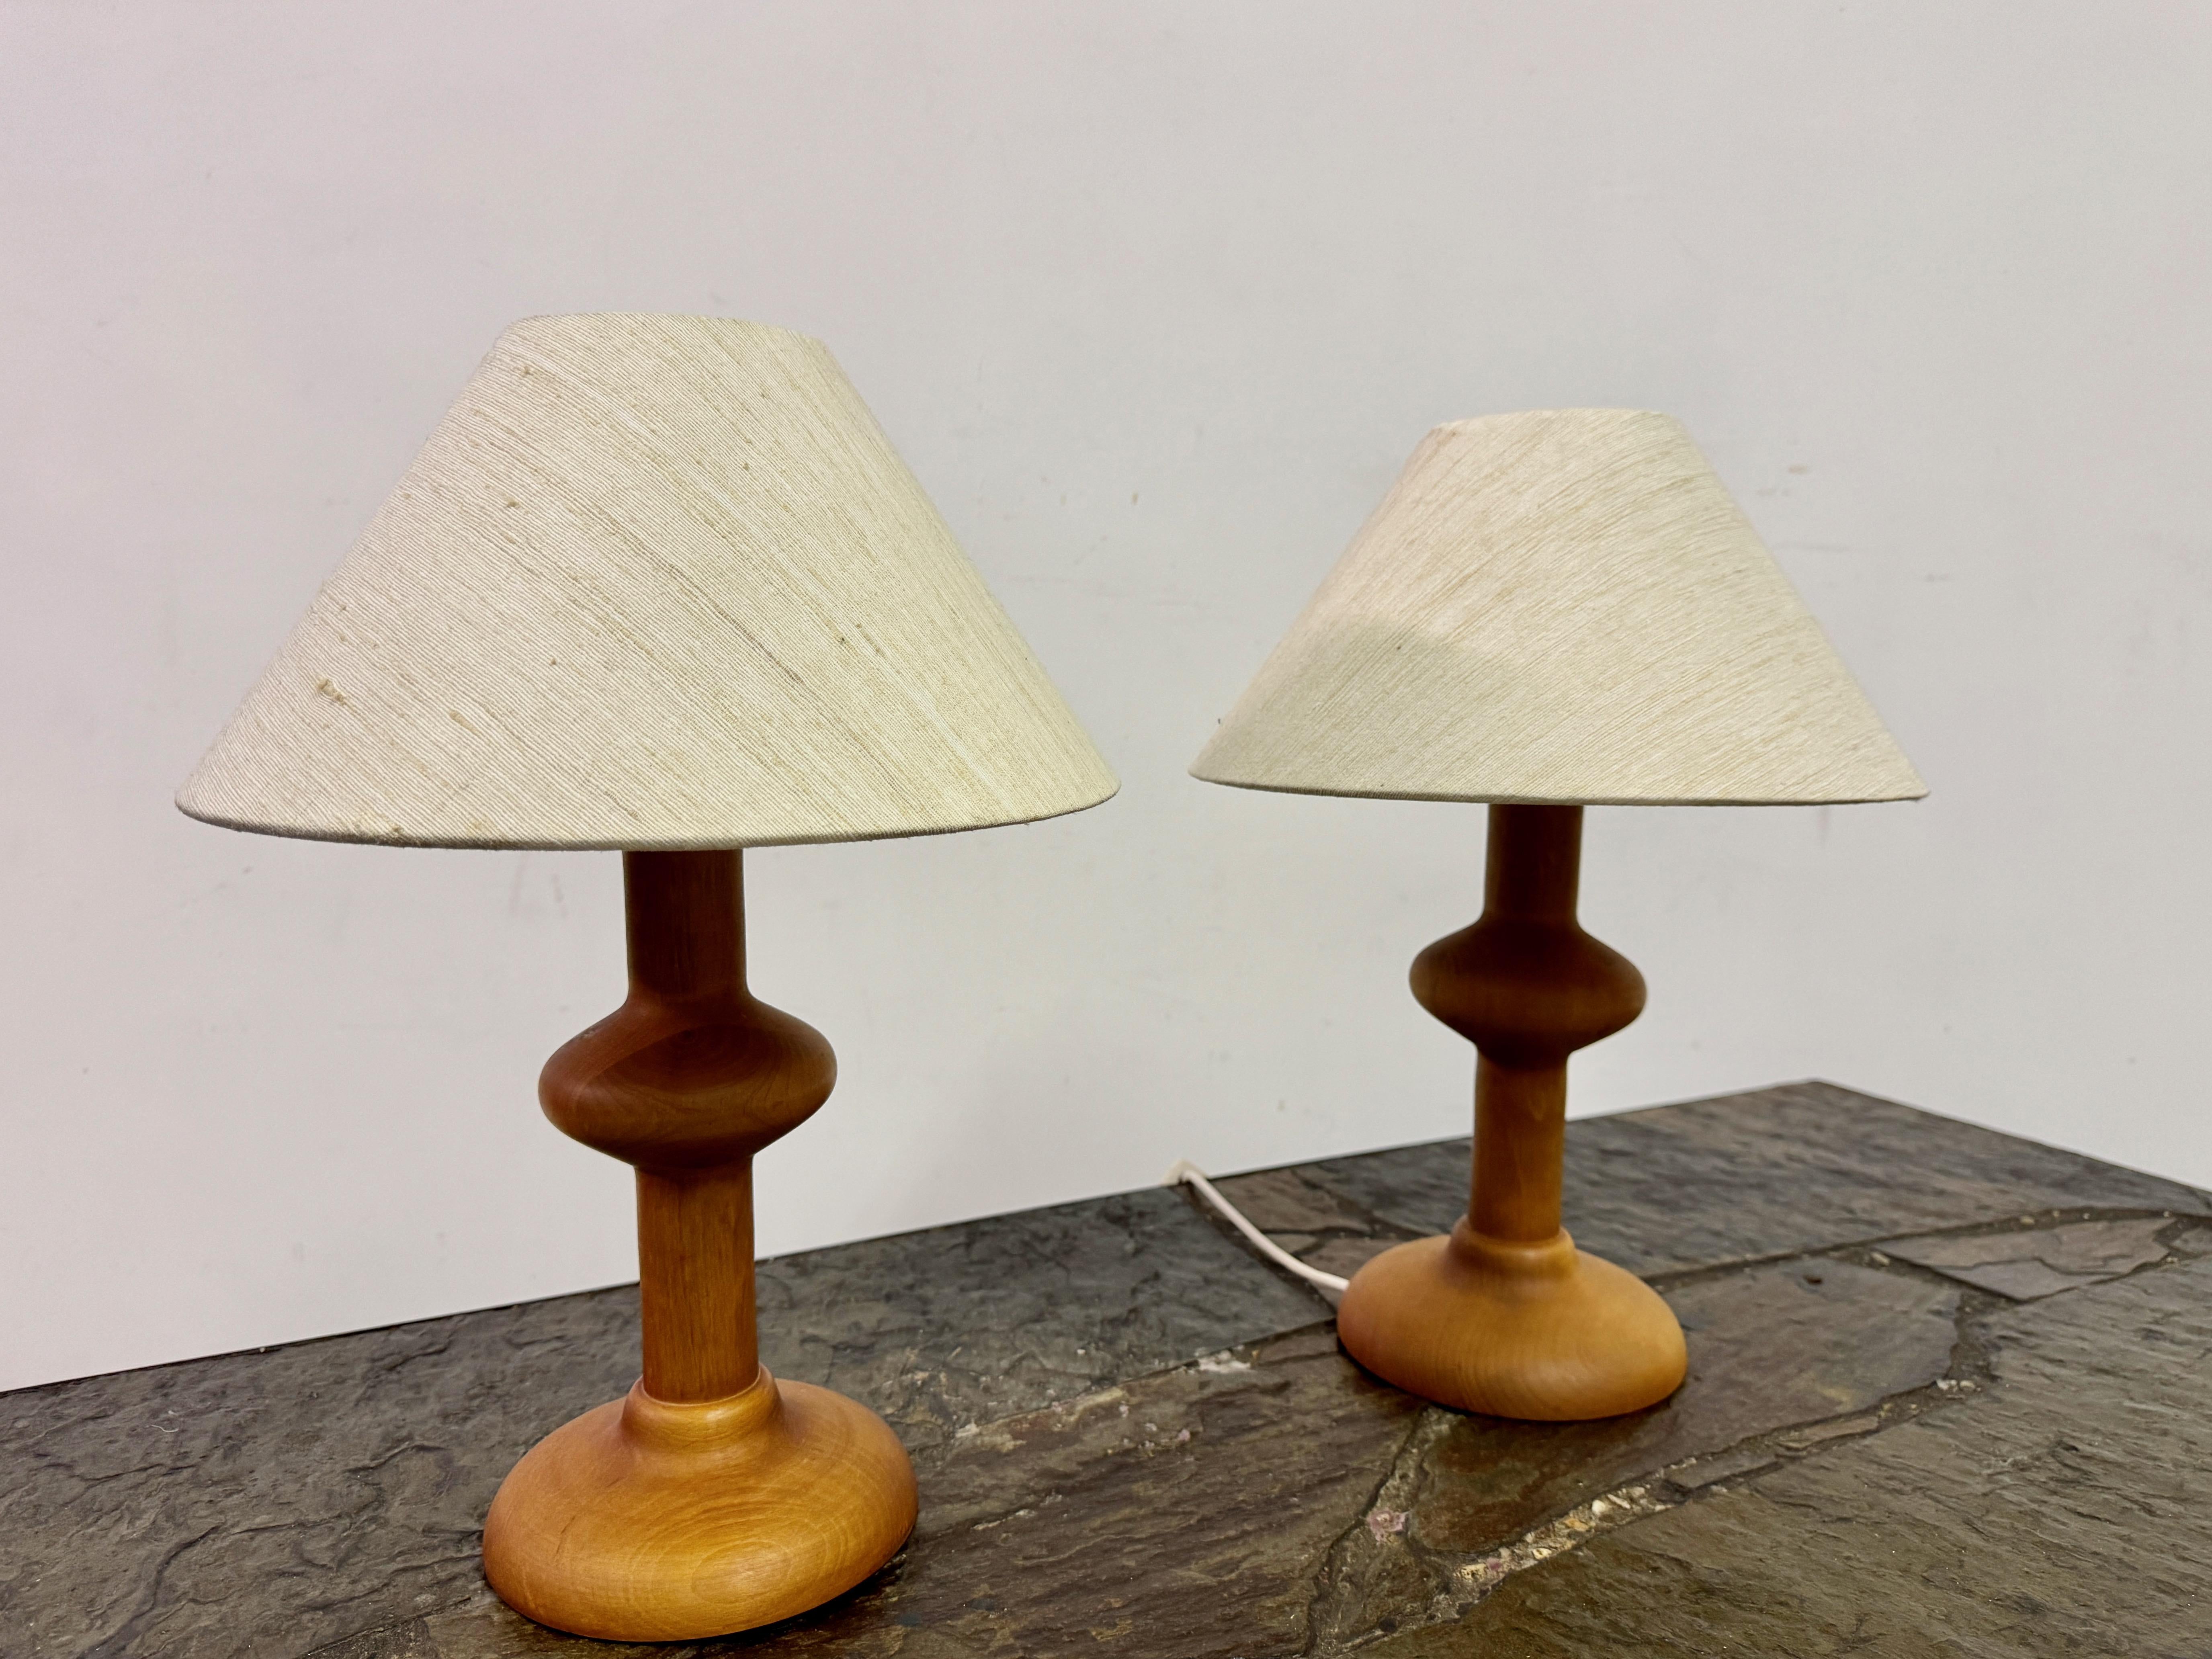 Paire de lampes de table

Bois tourné

Teintes originales

Forme organique

1970s

Petit pli dans l'une des teintes